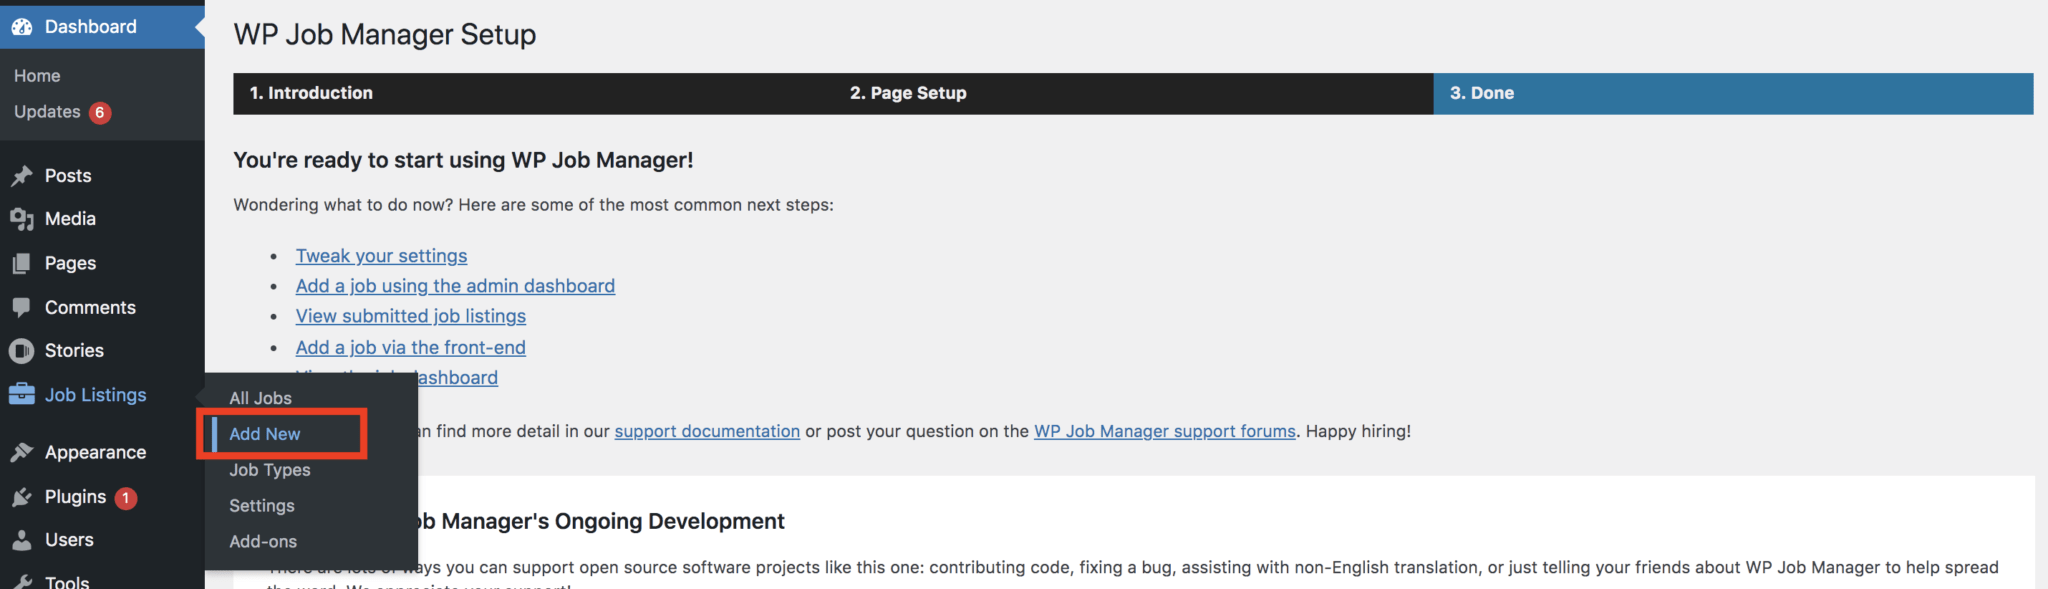 Så här skapar du en platsannons på WordPress  med WP Job Manager Plugin